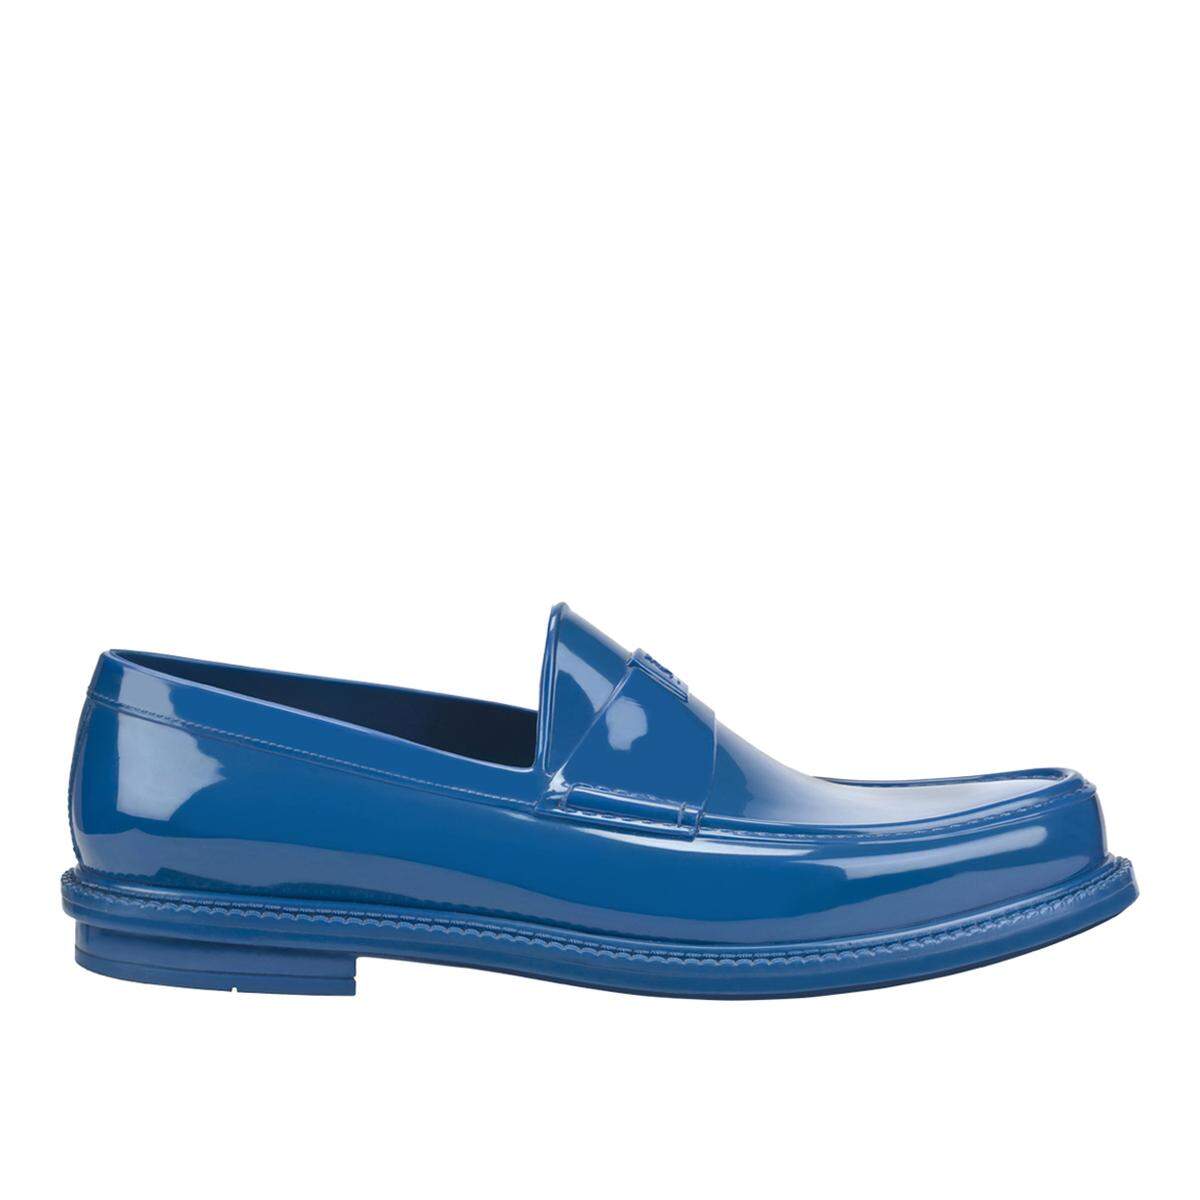 Die perfekten Schuhe für regnerische Ausflüge mit der Familie sind die in vielen bunten Farben erhältlichen Gummi Loafers von Yves Saint Laurent.